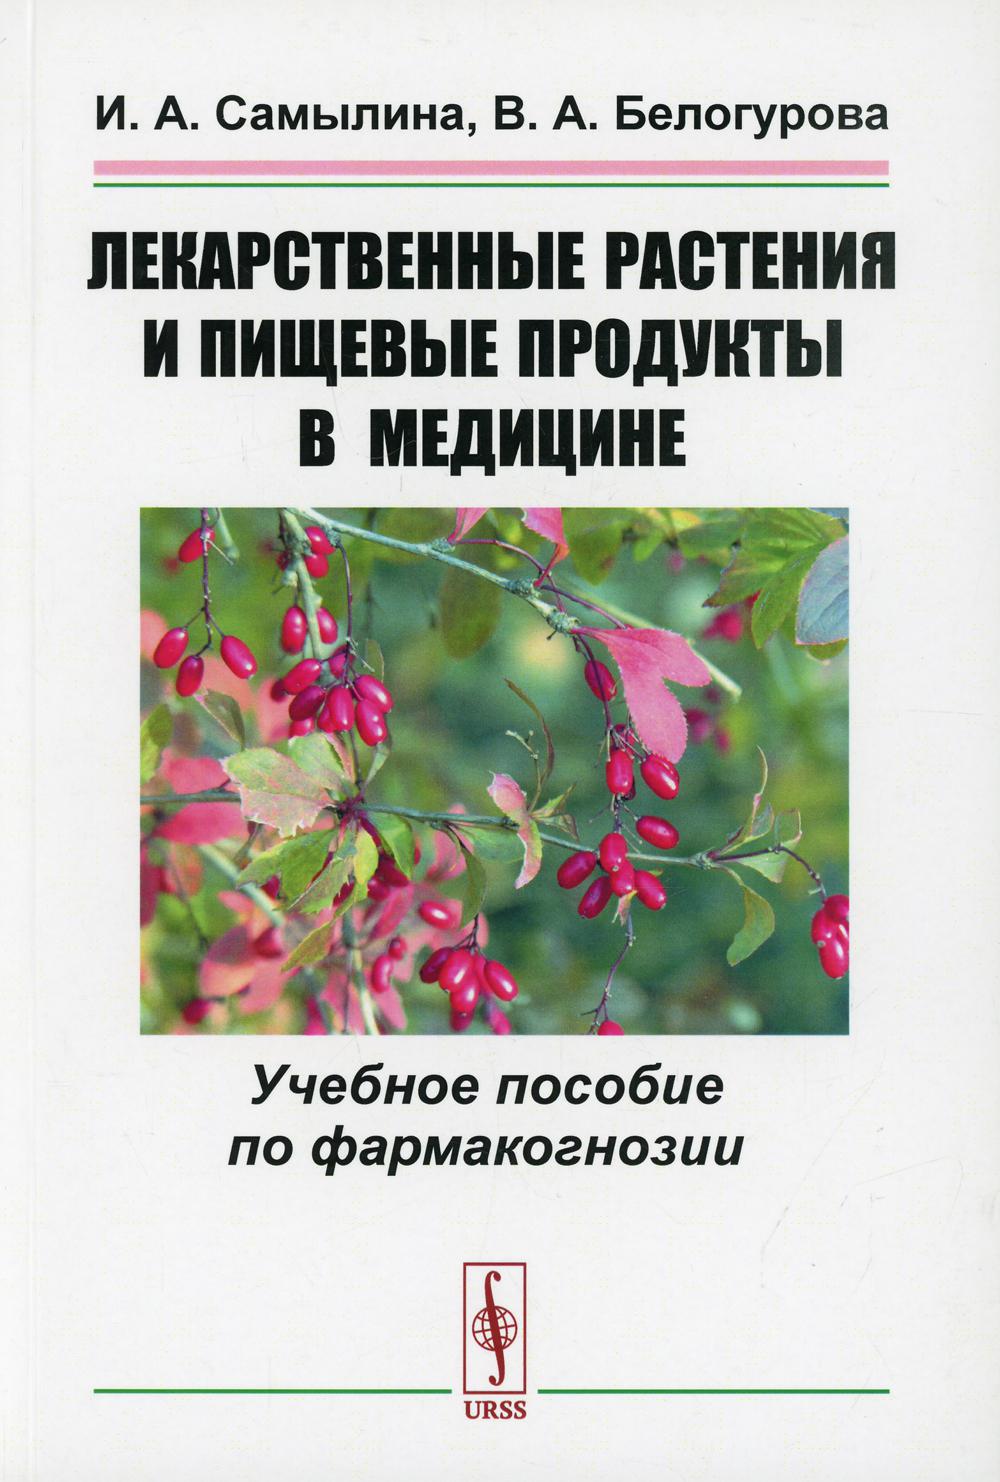 фото Книга лекарственные растения и пищевые продукты в медицине изд. стер. ленанд